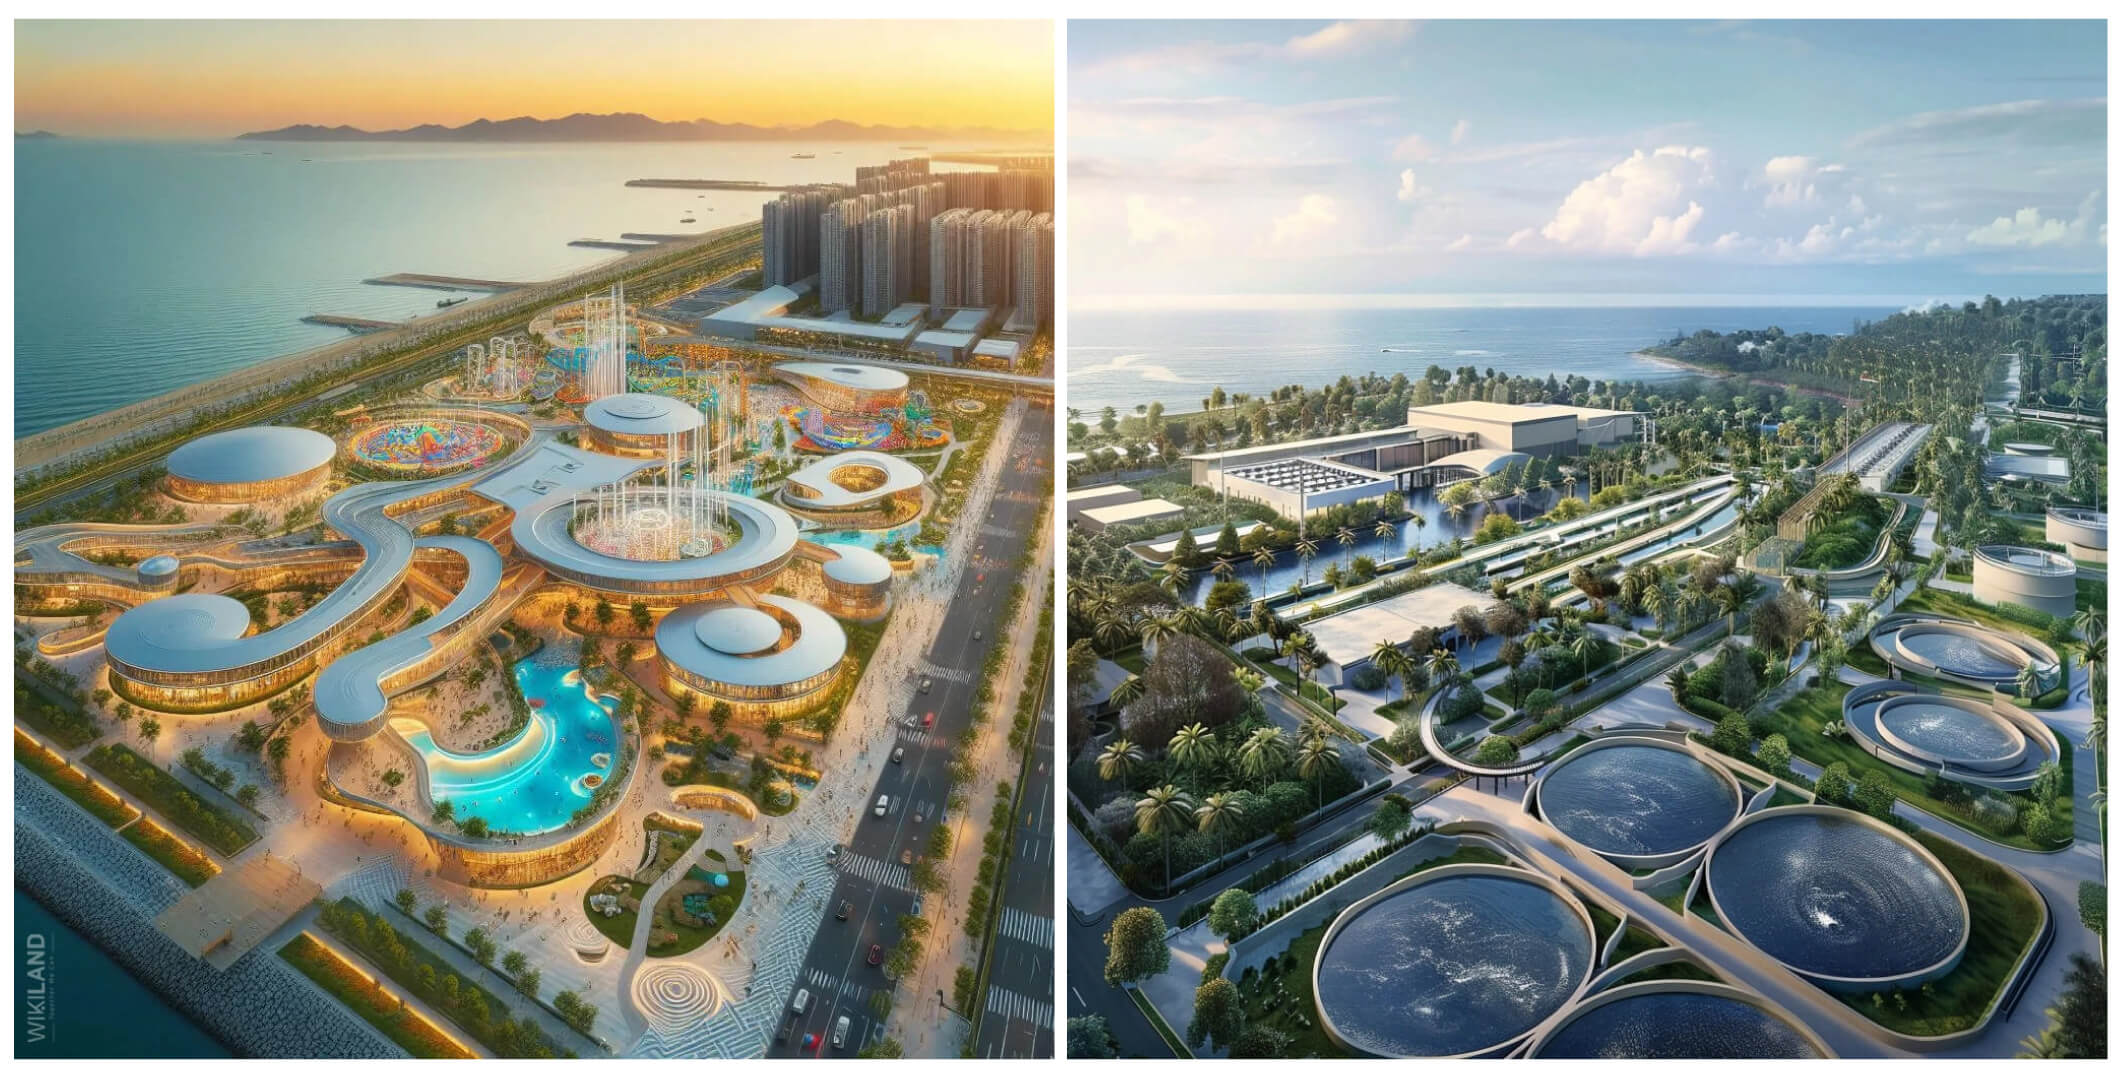 Phú quốc hướng đến phát triển trở thành một đô thị biển đảo, trung tâm dịch vụ du lịch, nghỉ dưỡng chất lượng cao